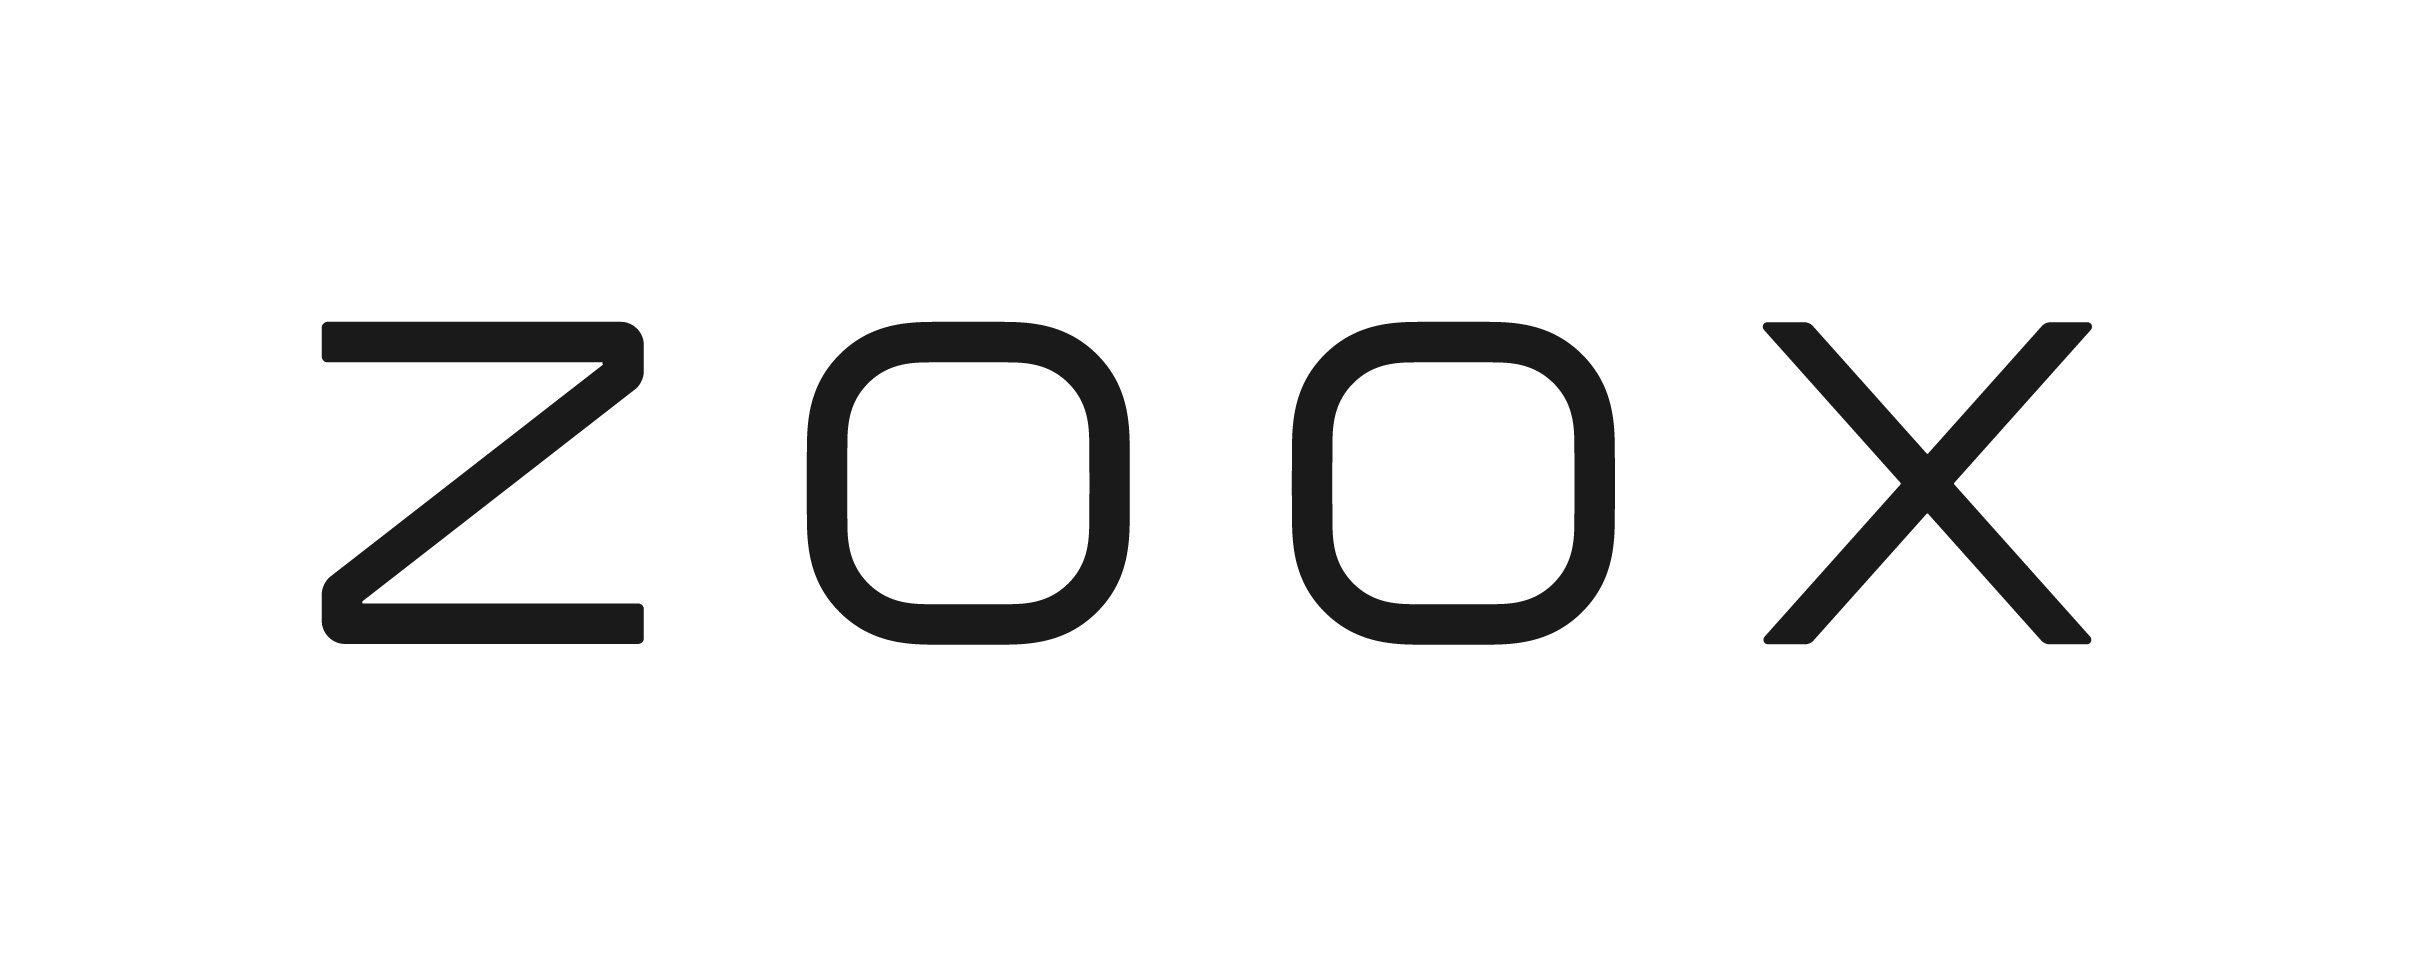 Zoox_logo_2021